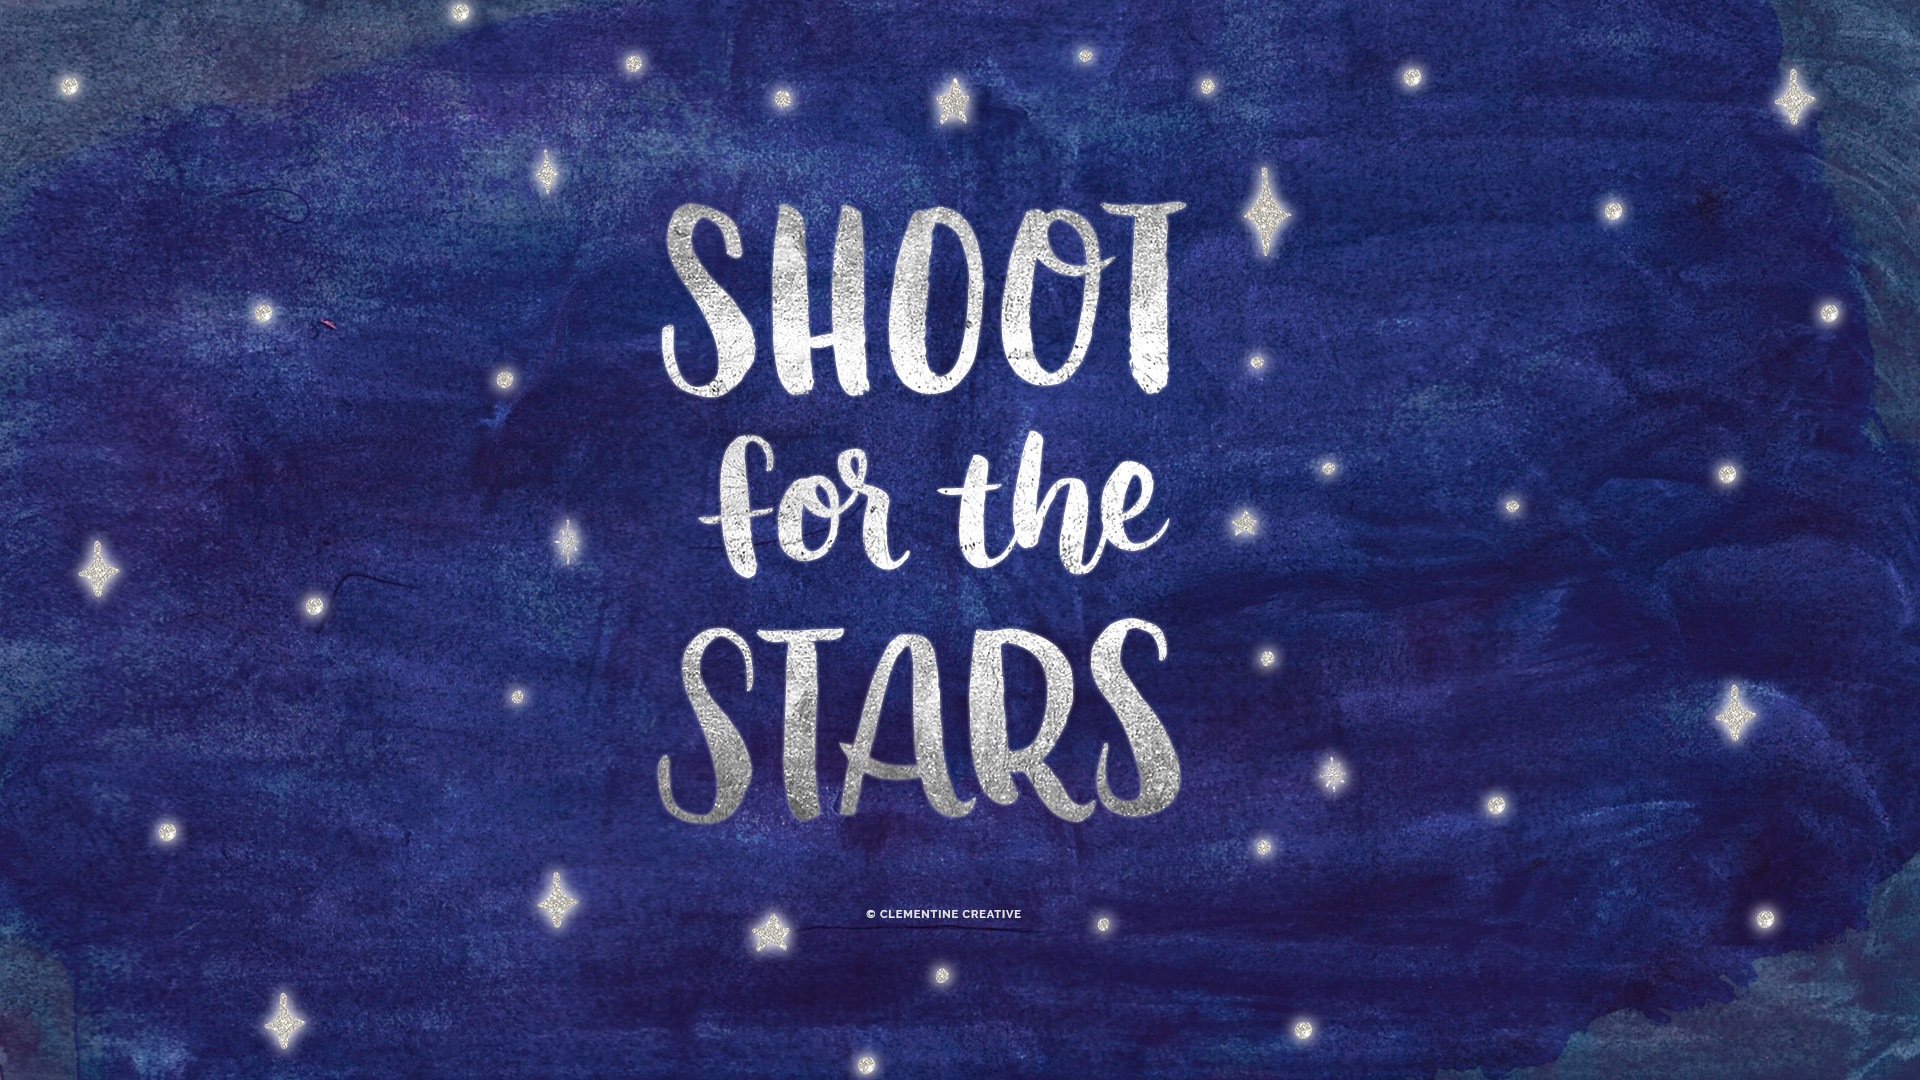 Shoot For The Stars Desktop 1,920ã1,080 Pixeles - Desktop Wallpaper Pinterest Blue - HD Wallpaper 